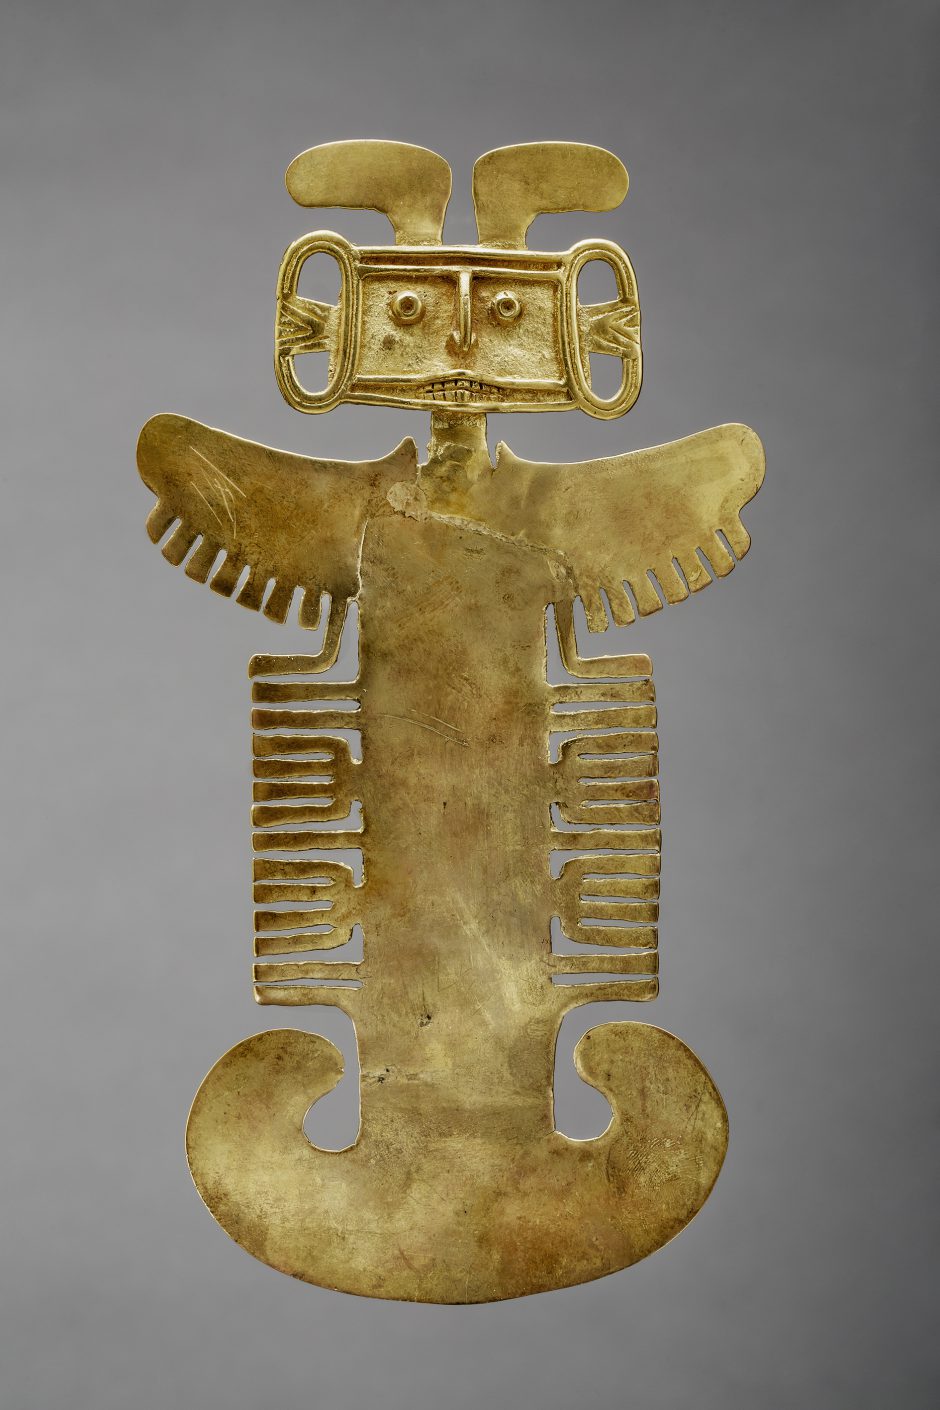 Aus Gold gegossener Brustanhänger eines göttlichen Mensch-Tierwesens, Kupfer und Gold, Tolima-Stil 100 - 1000 n. Chr.